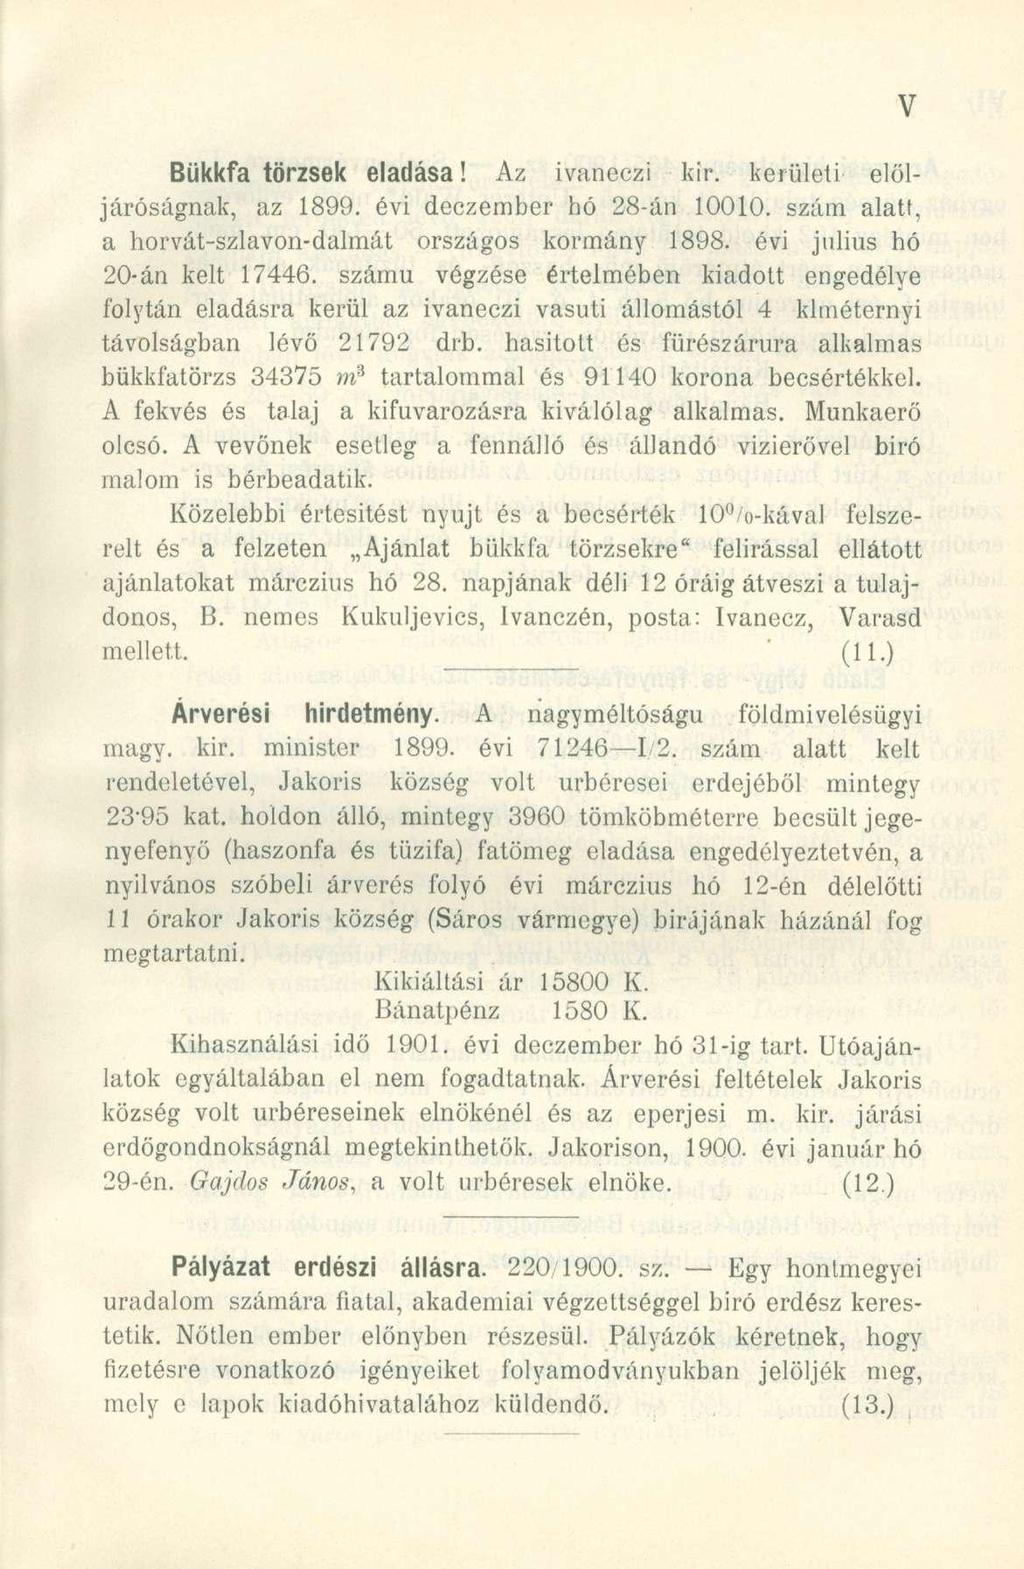 Bükkfa törzsek eladása! Az ivanéczi kir. kerületi elöljáróságnak, az 1899. évi deczember hó 28-án 10010. szám alatf, a horvát-szlavon-dalmát országos kormány 1898. évi július hó 20-án kelt 17446.